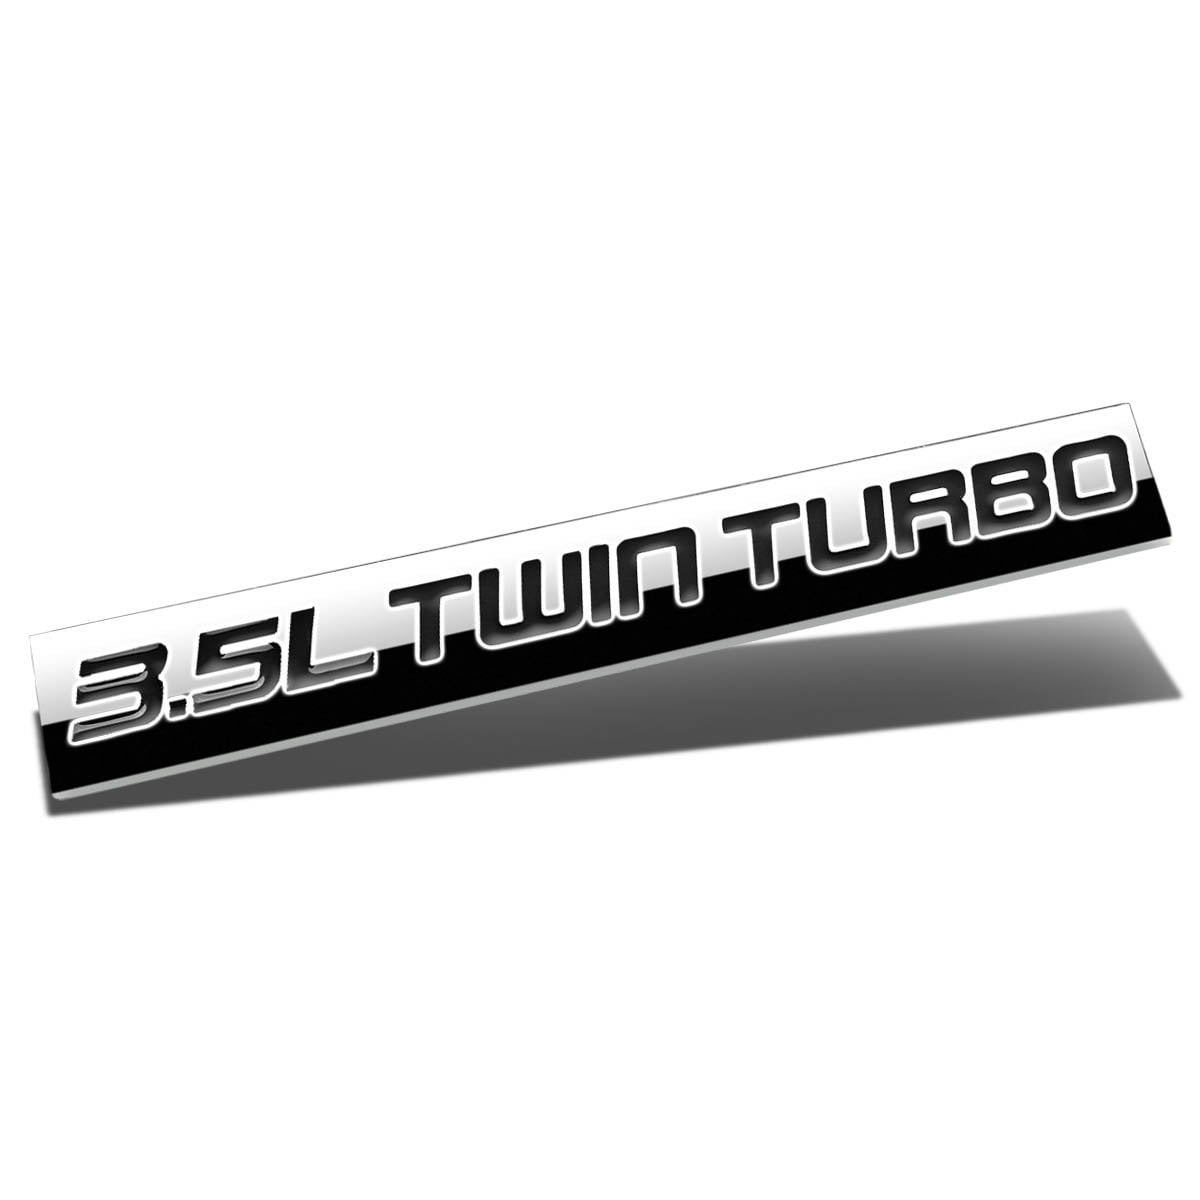 Red & Black Chrome Finish Metal Emblem 3.5L Twin Turbo Badge Red & Black Letter